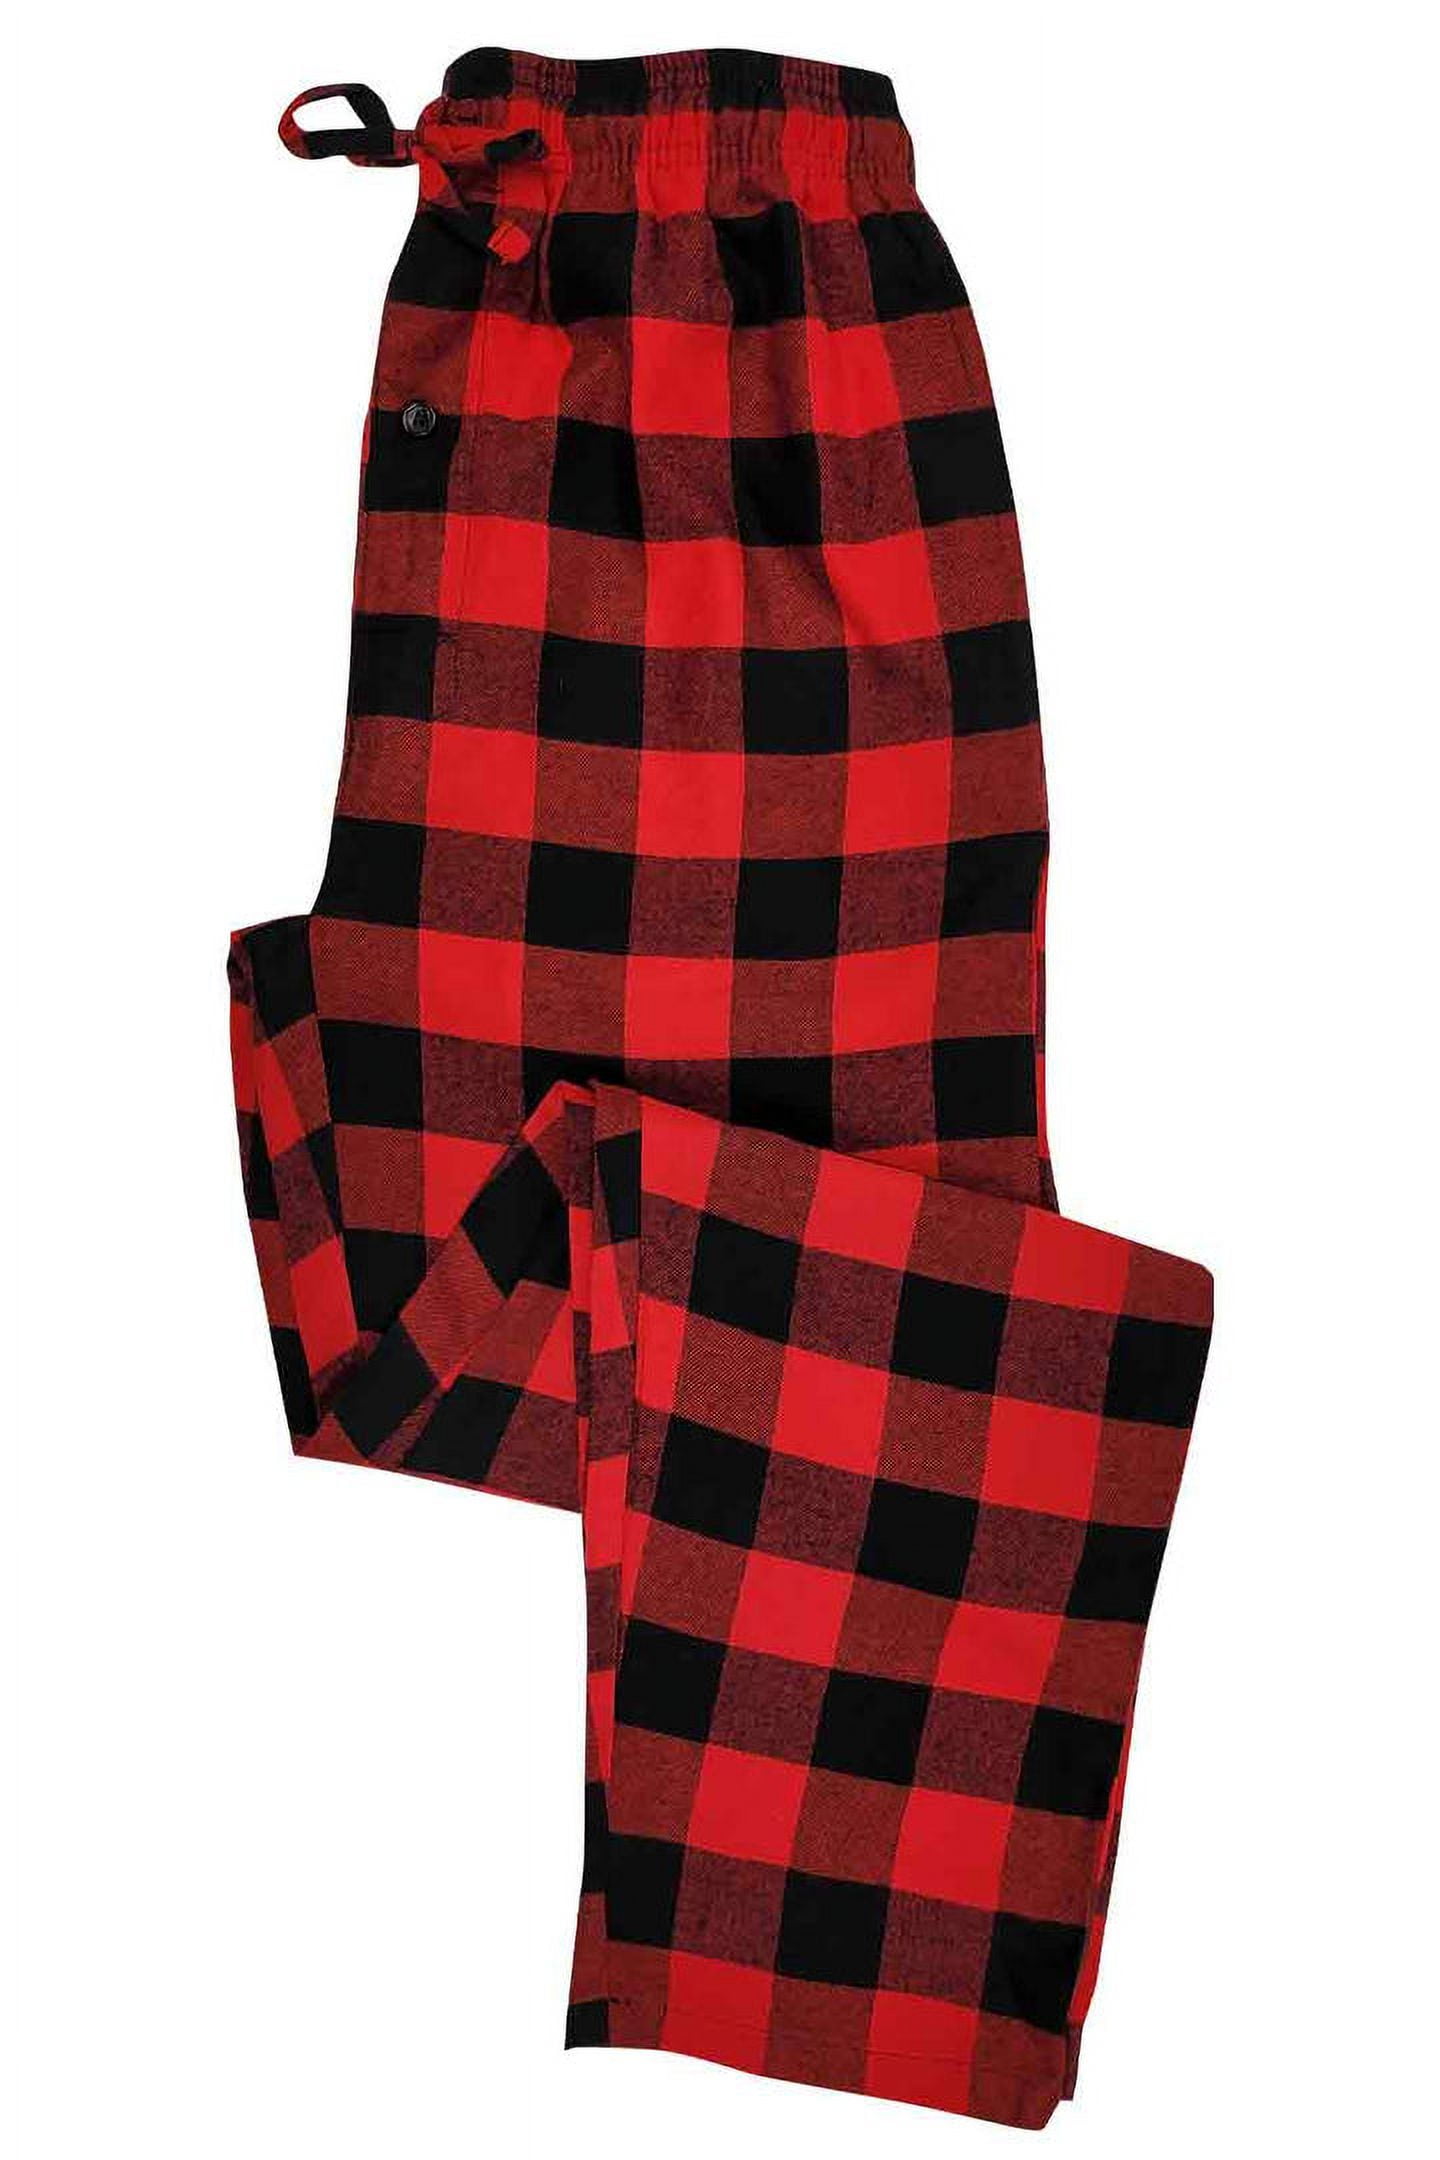 Wondershop red black Buffalo Plaid check men's pajama pants bottoms size  4XL